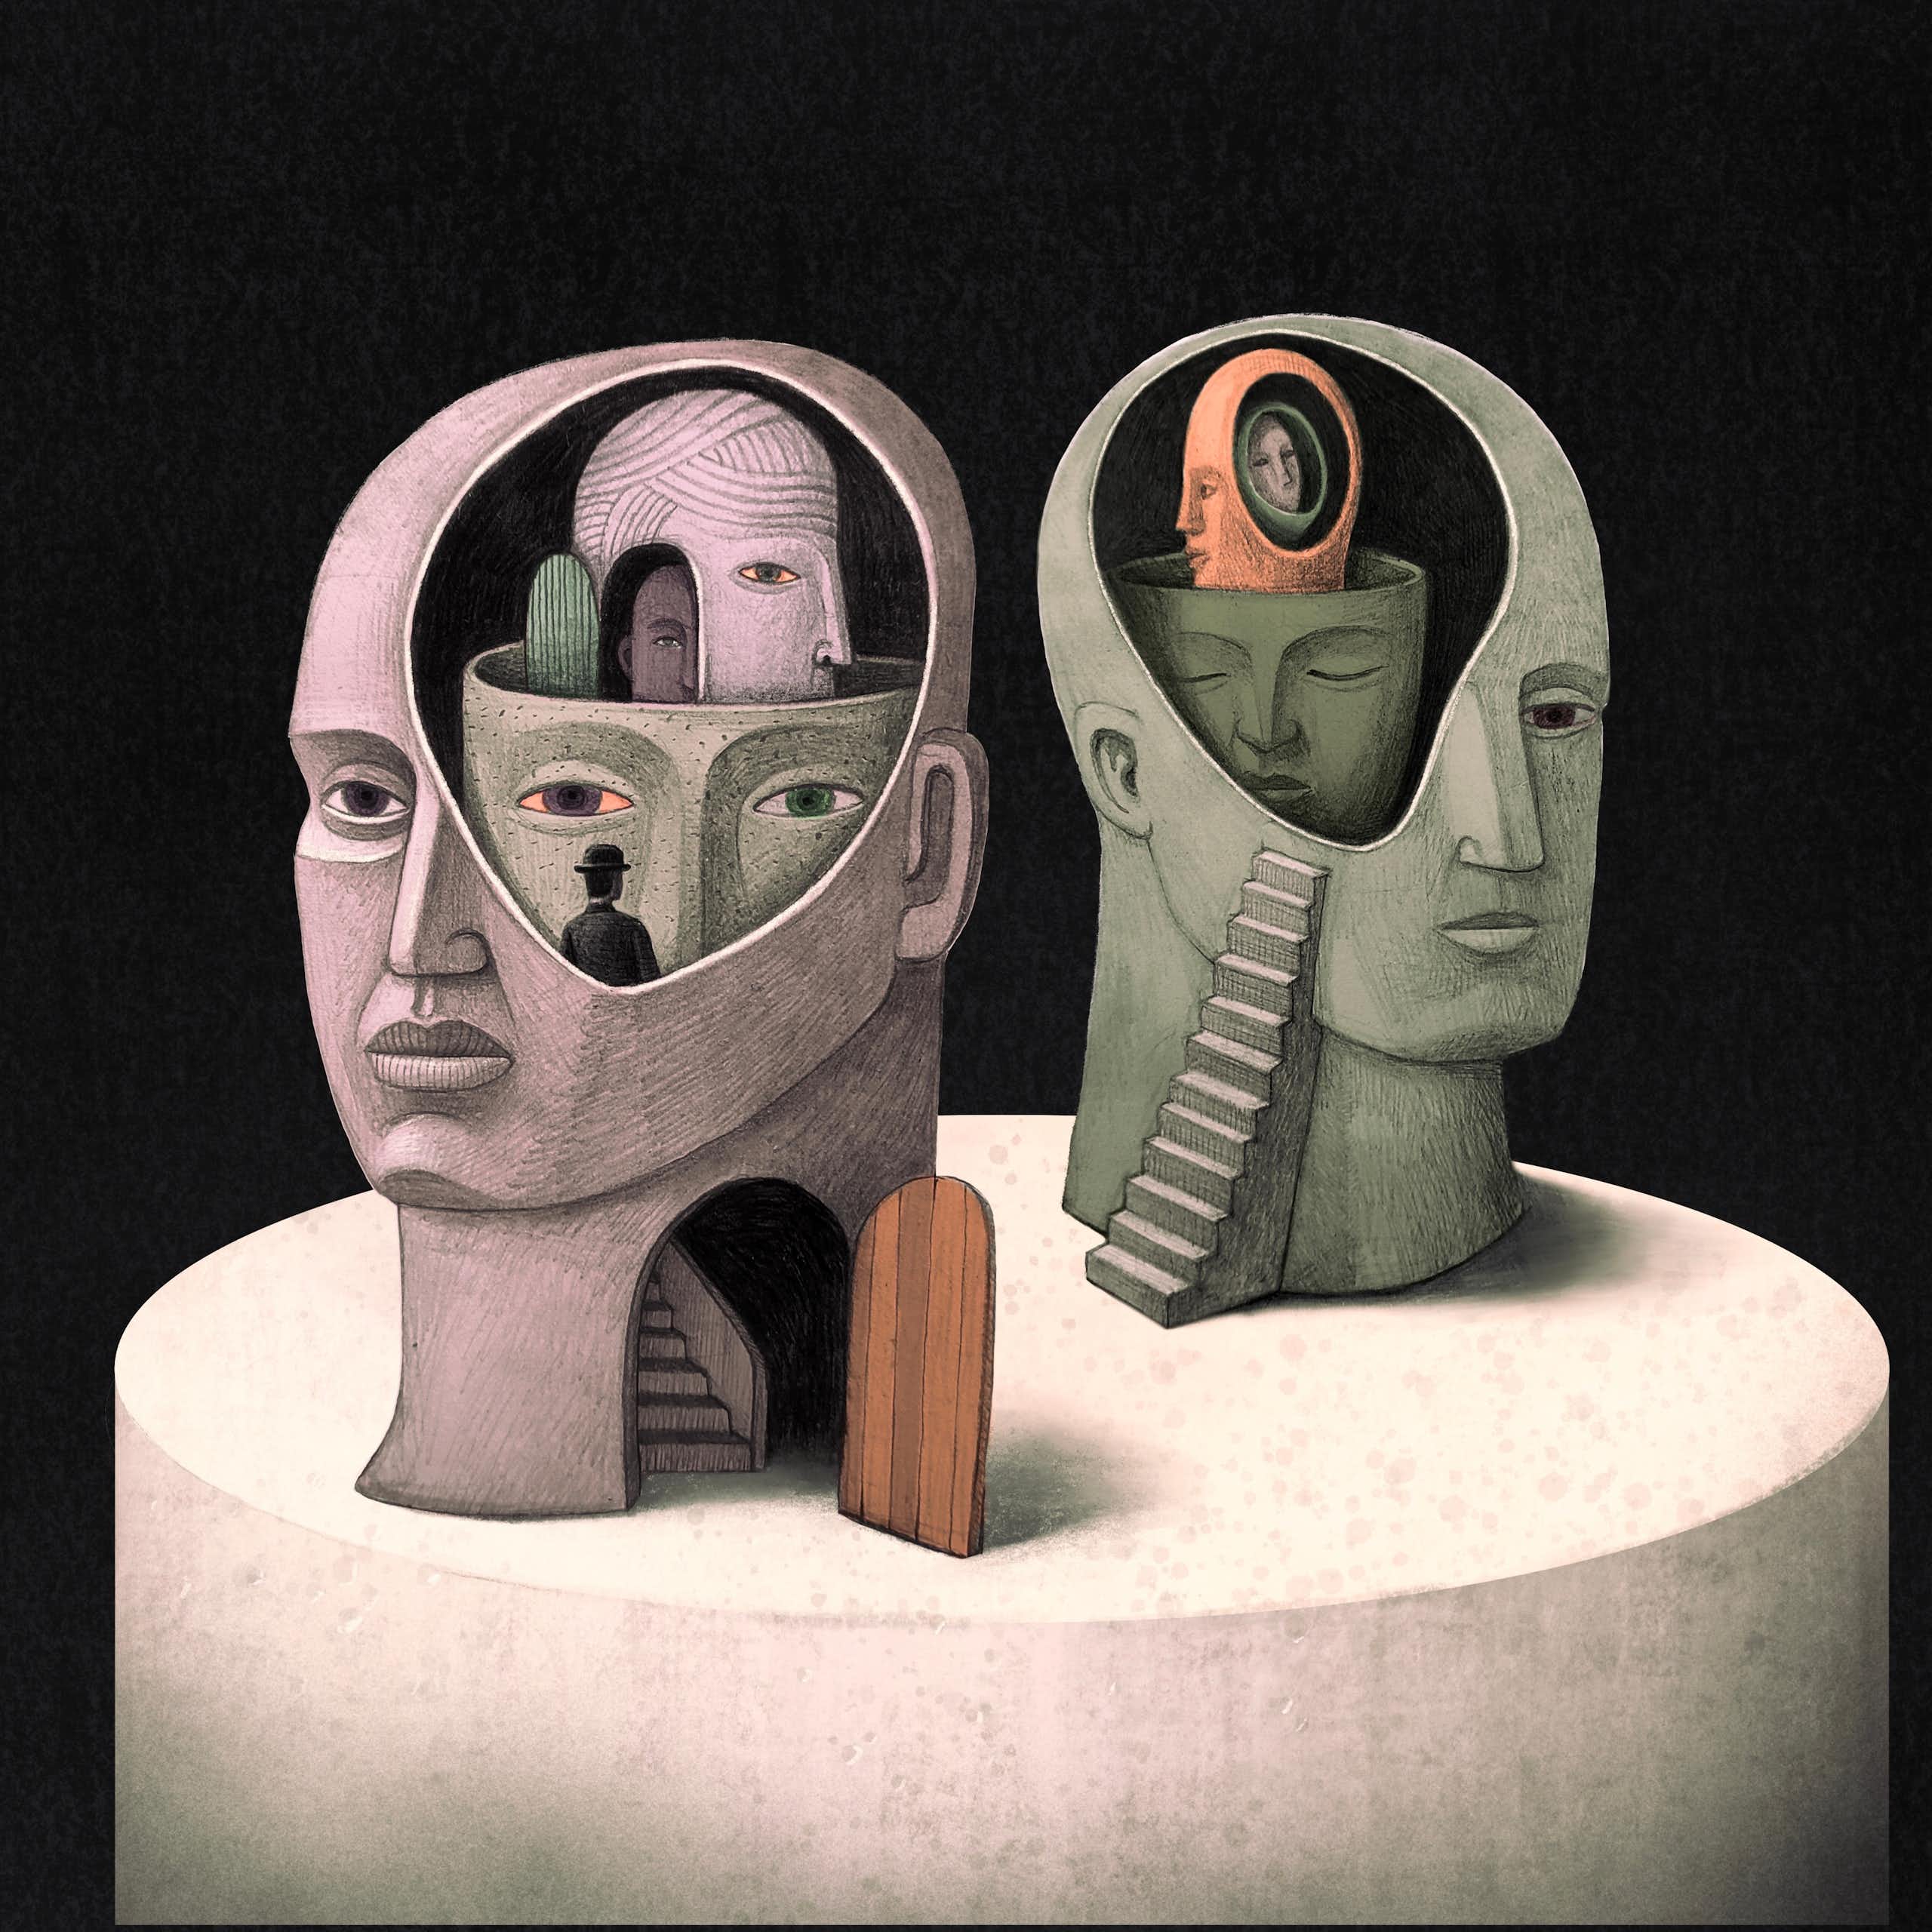 Une illustration surréaliste de deux têtes avec des portes et des escaliers et d'autres têtes à l'intérieur.